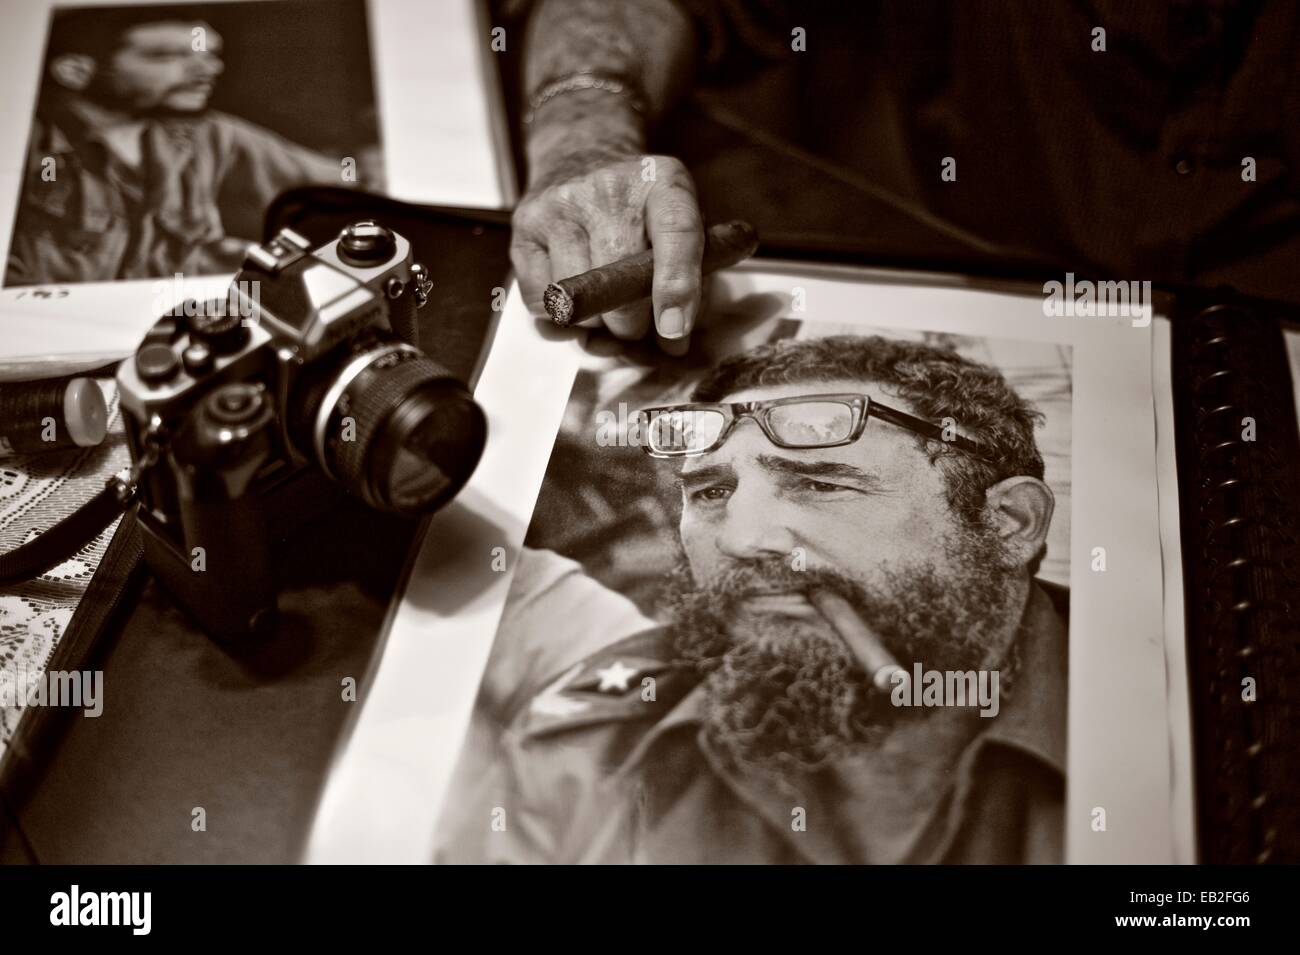 Fotografo cubano Liborio Noval, nato nel 1936, e uno dei più iconica fotografo della Rivoluzione cubana, con una foto di Fidel Castro. Noval morì nel 2012. Foto Stock